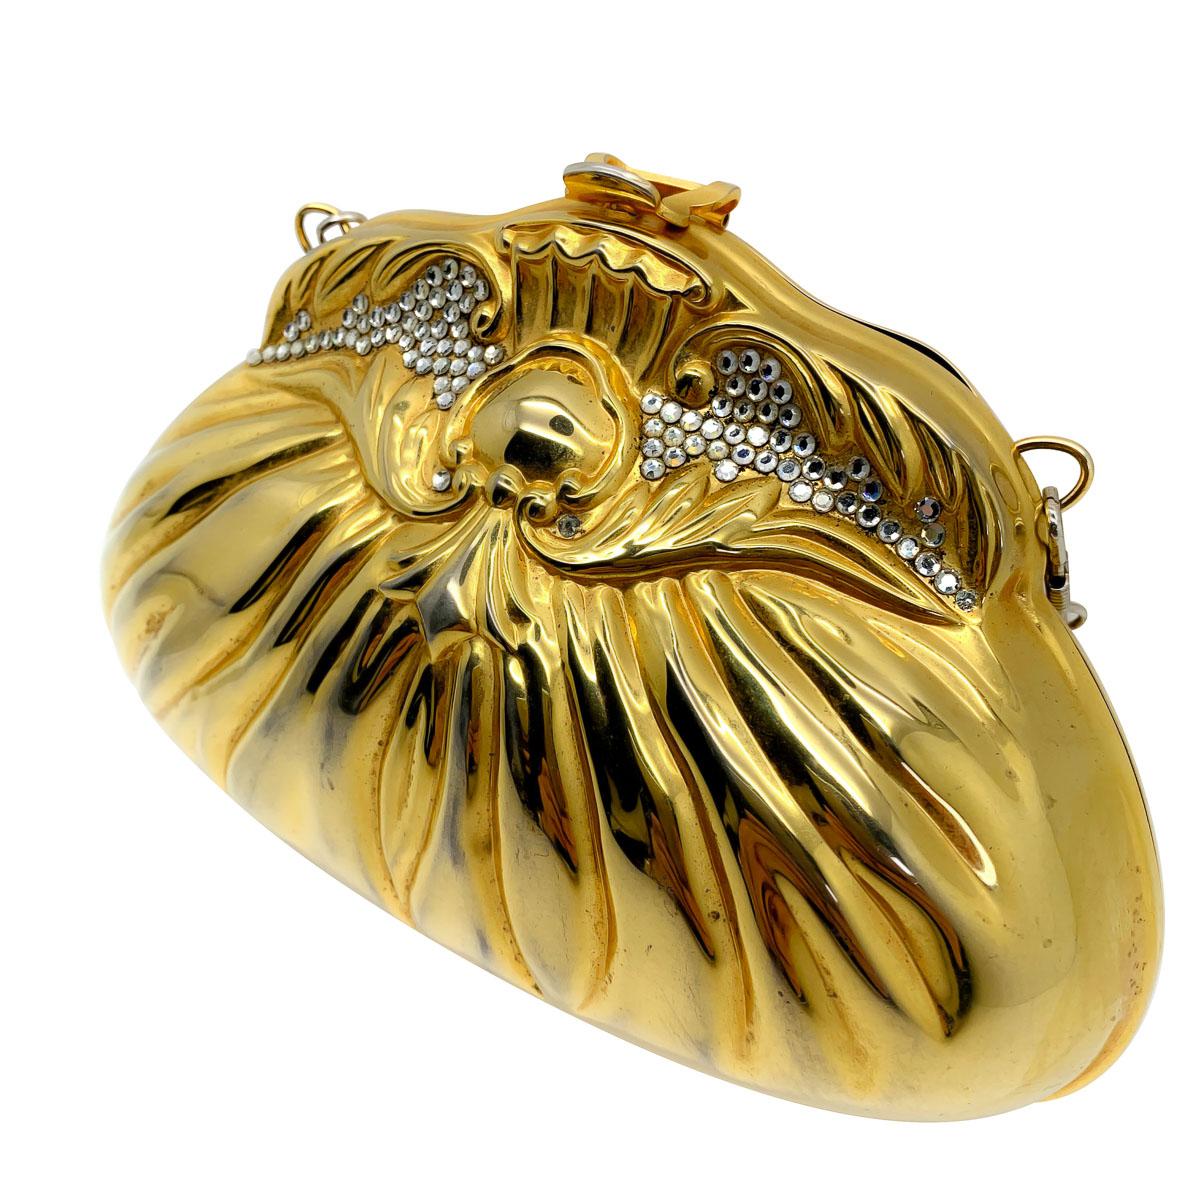 Un sac minaudière vintage en or. Il s'agit d'un sac à main rigide conçu dans le style d'un sac à main en tissu et orné de minuscules cristaux appliqués qui se coordonnent avec la sangle en chaîne métallique de couleur argentée. L'intérieur est